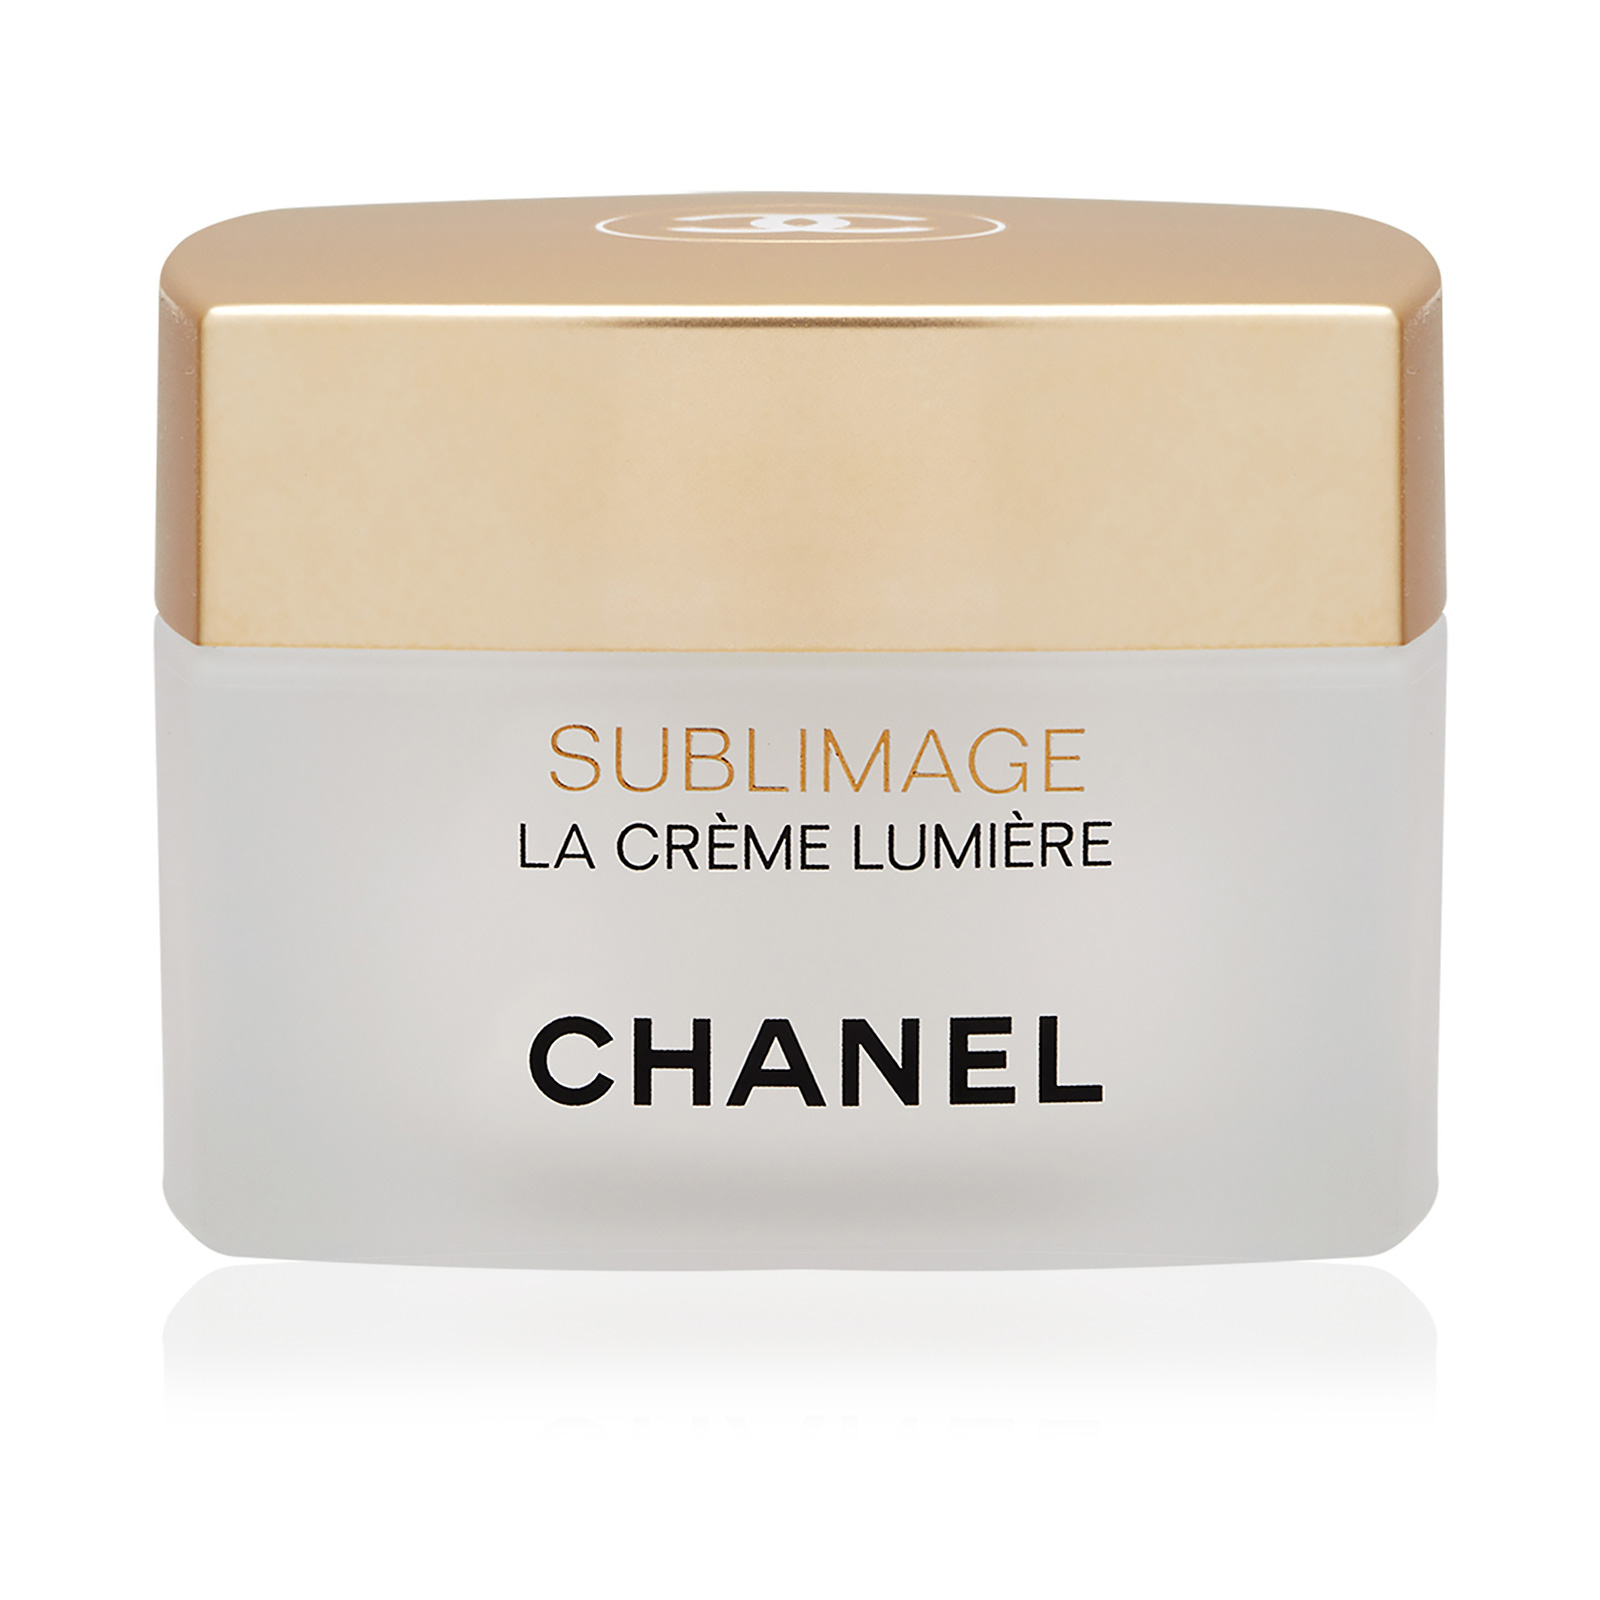 CHANEL, Makeup, Chanel Sublimage La Crme